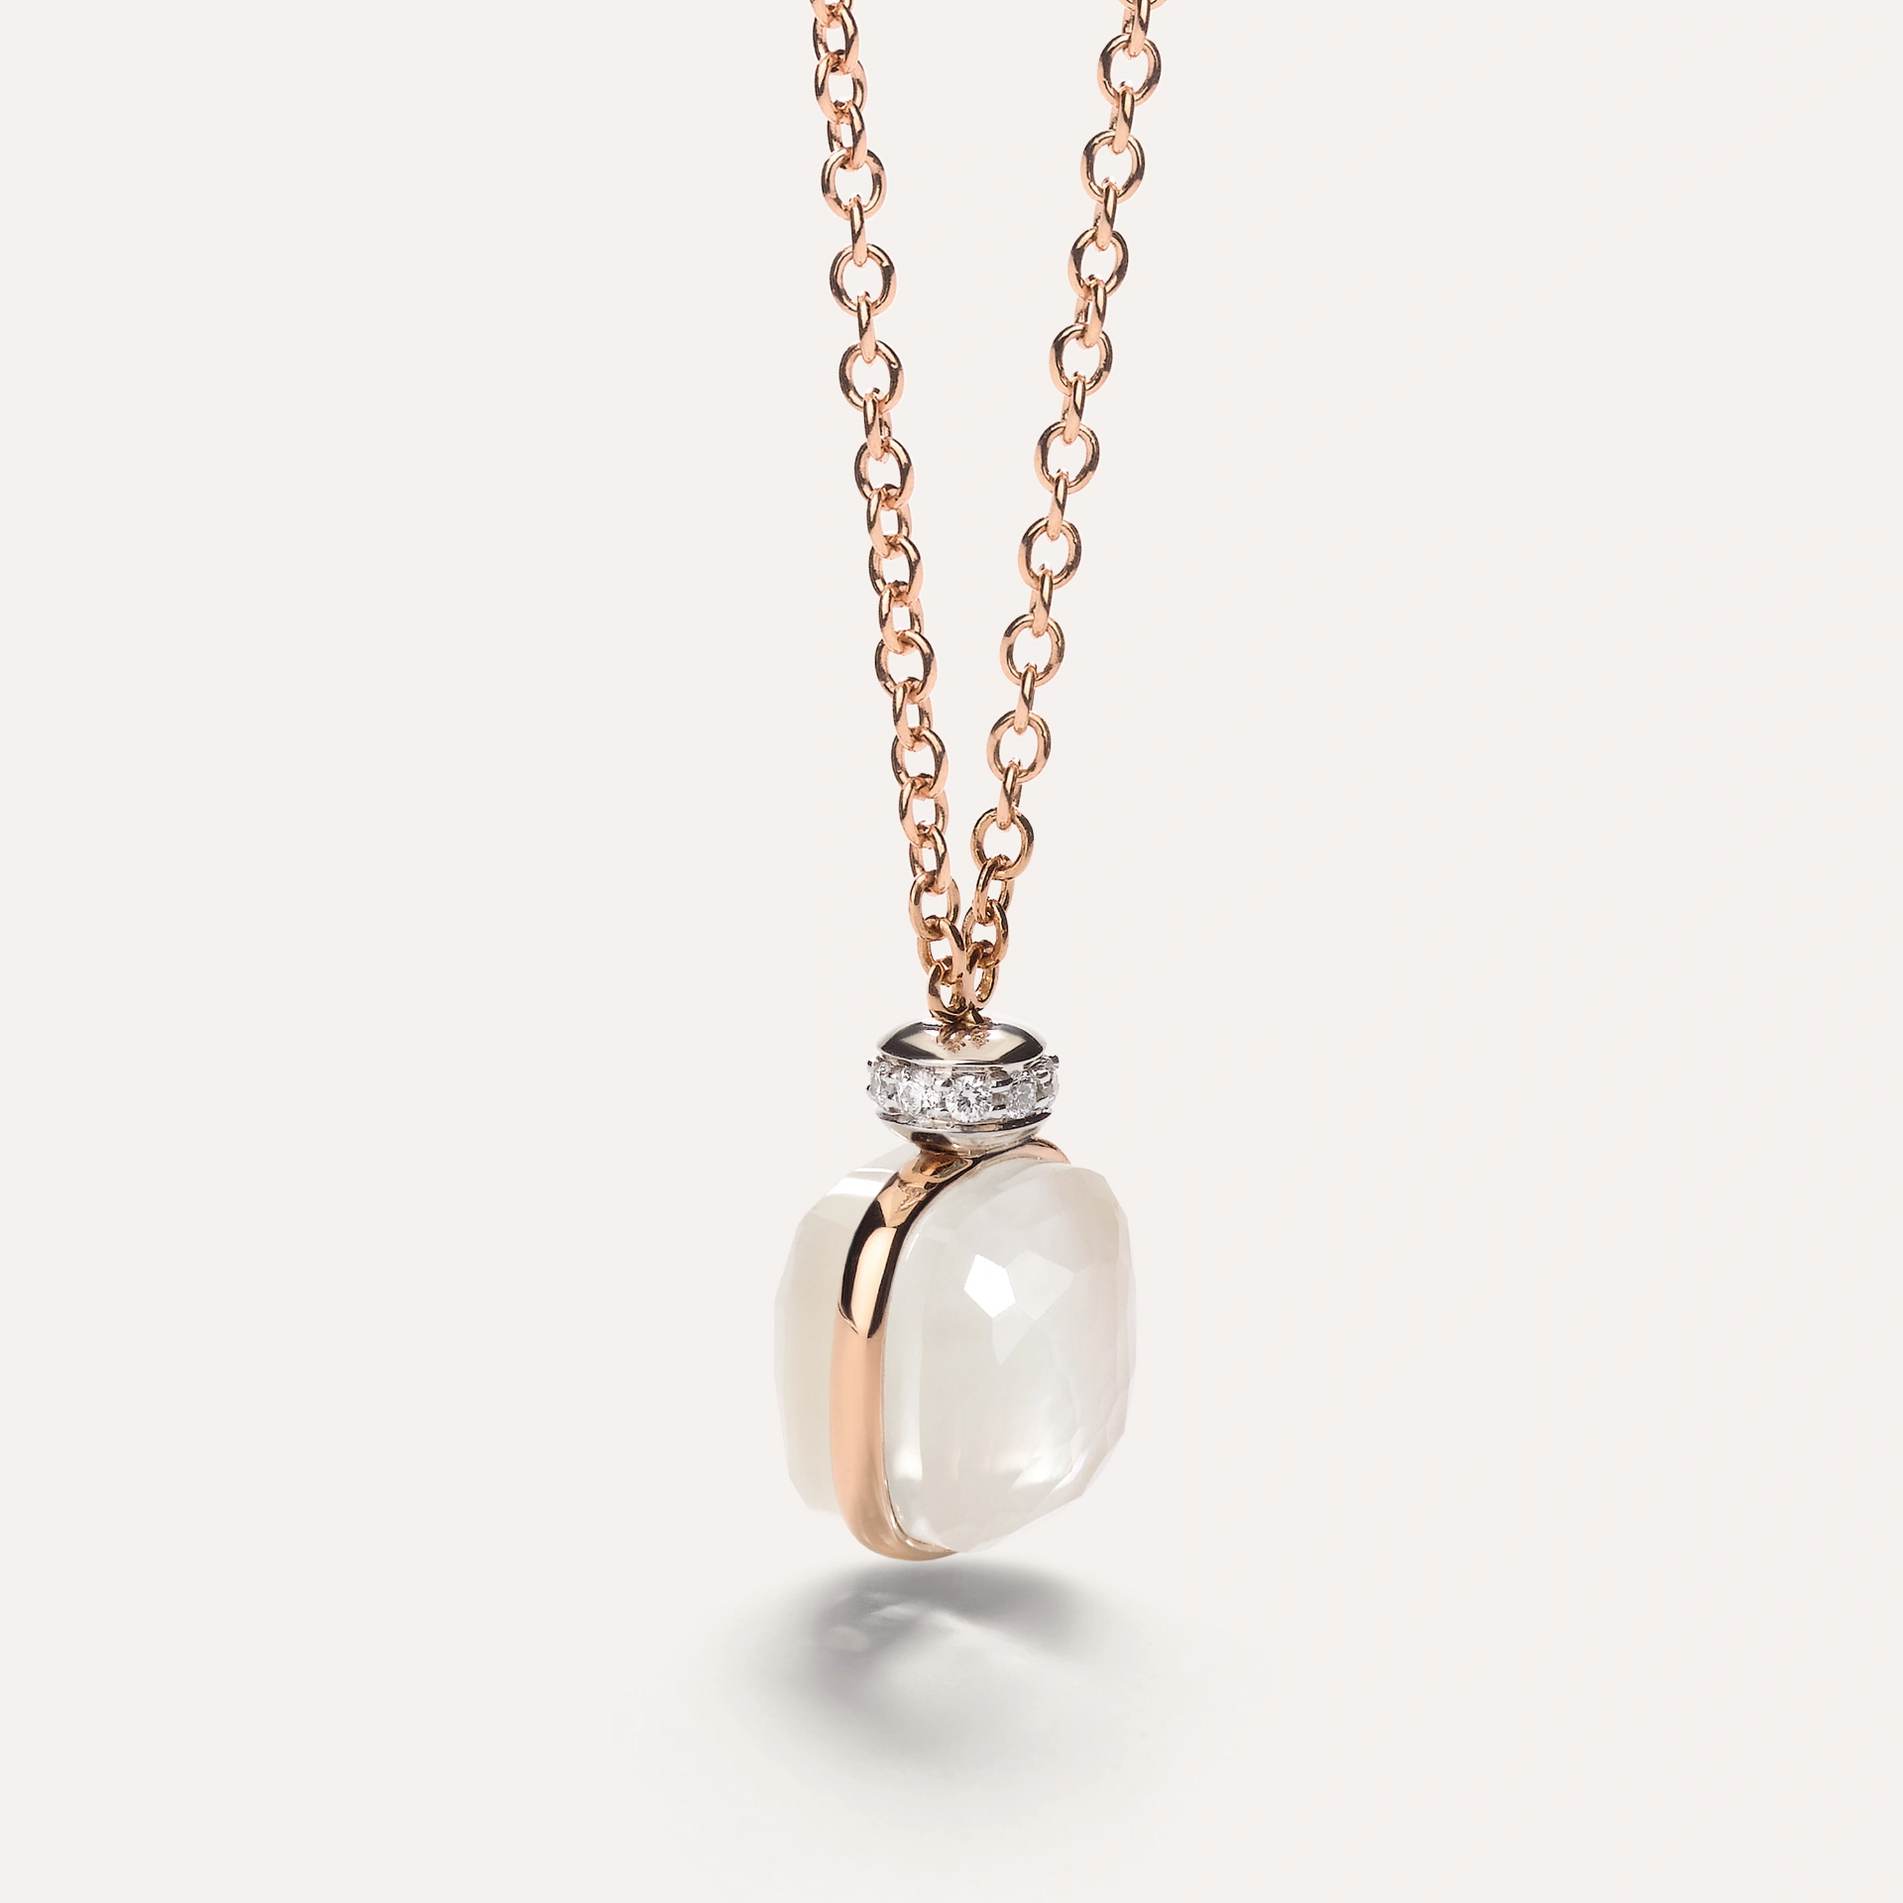 Pomellato Nudo Necklace Mother of Pearl, White Topaz and Diamonds - Orsini Jewellers